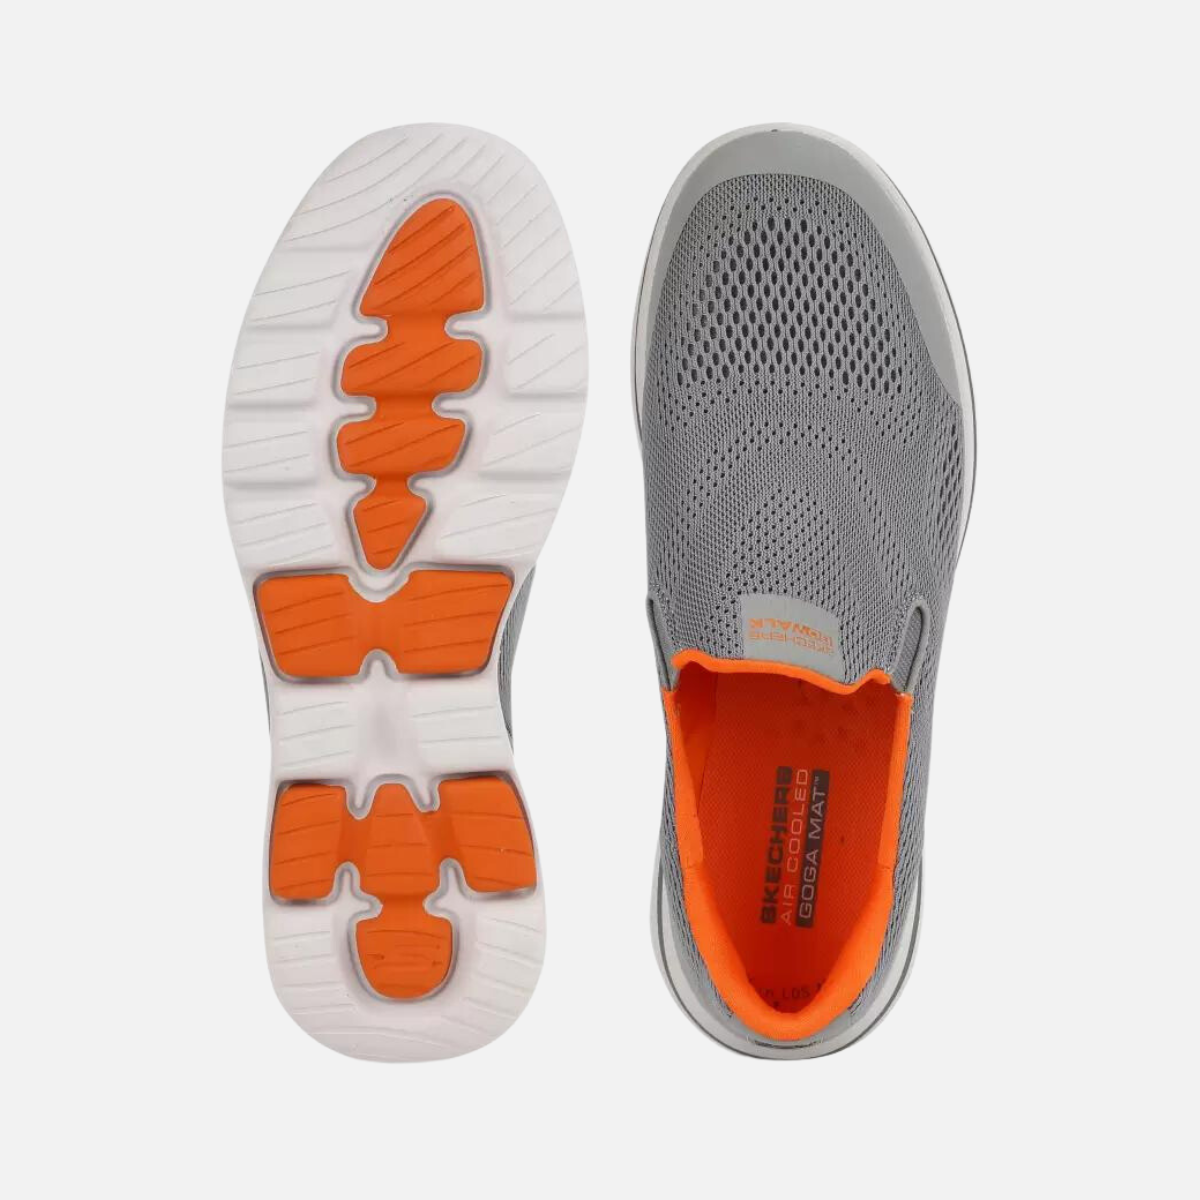 Skechers GO WALK 5 - QUADPLEX Men's Walking Shoes -Grey/Orange